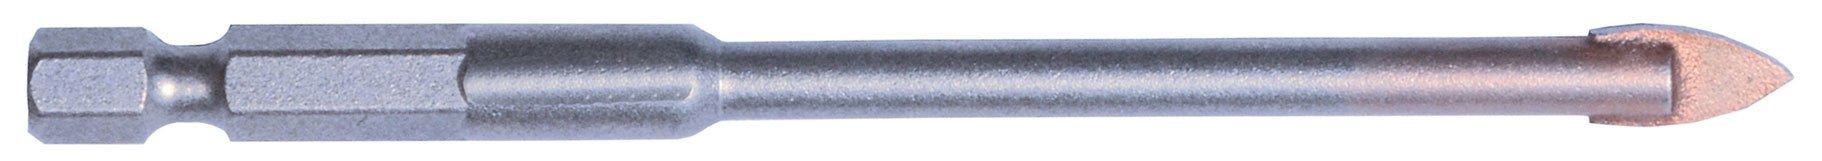 PROGlas drill bit 6,35 mm (1/4") hex shank 